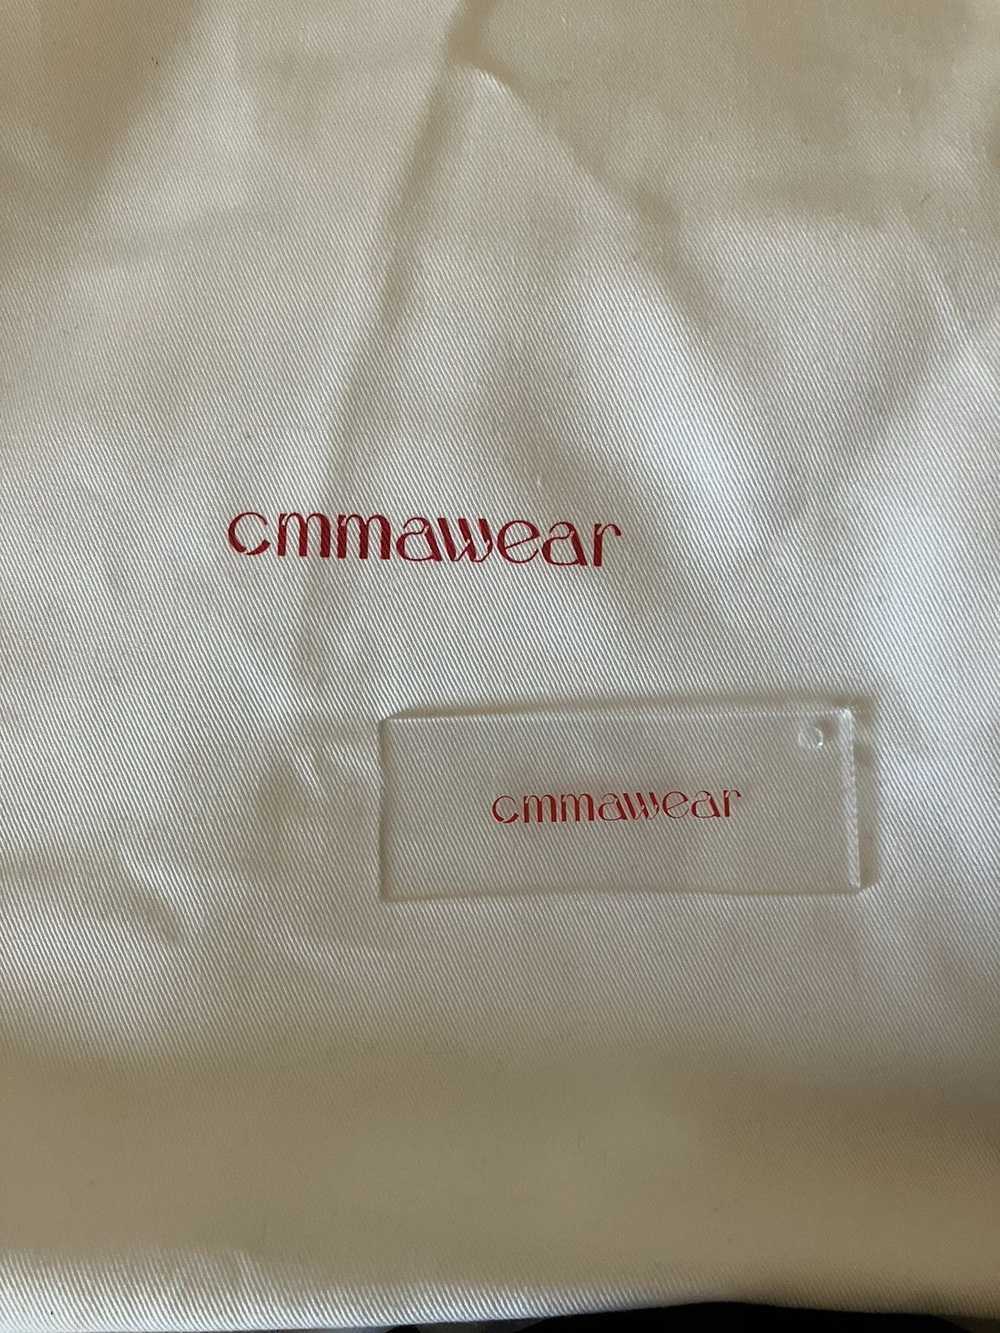 CMMAWEAR Gyoza bag small - image 10